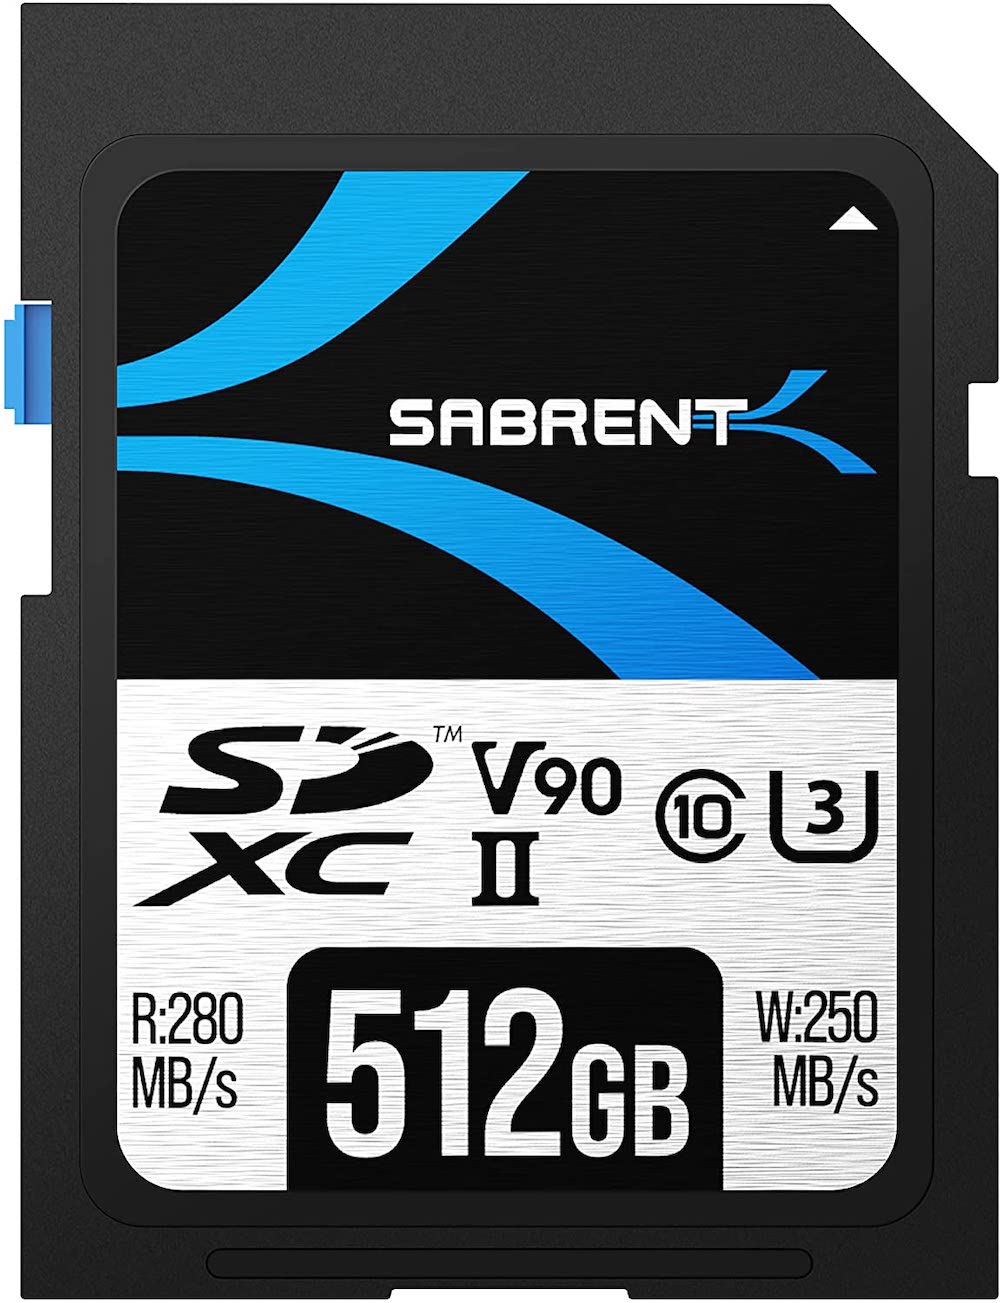 Sabrent's Rocket V90 512GB SD UHS-II memory card